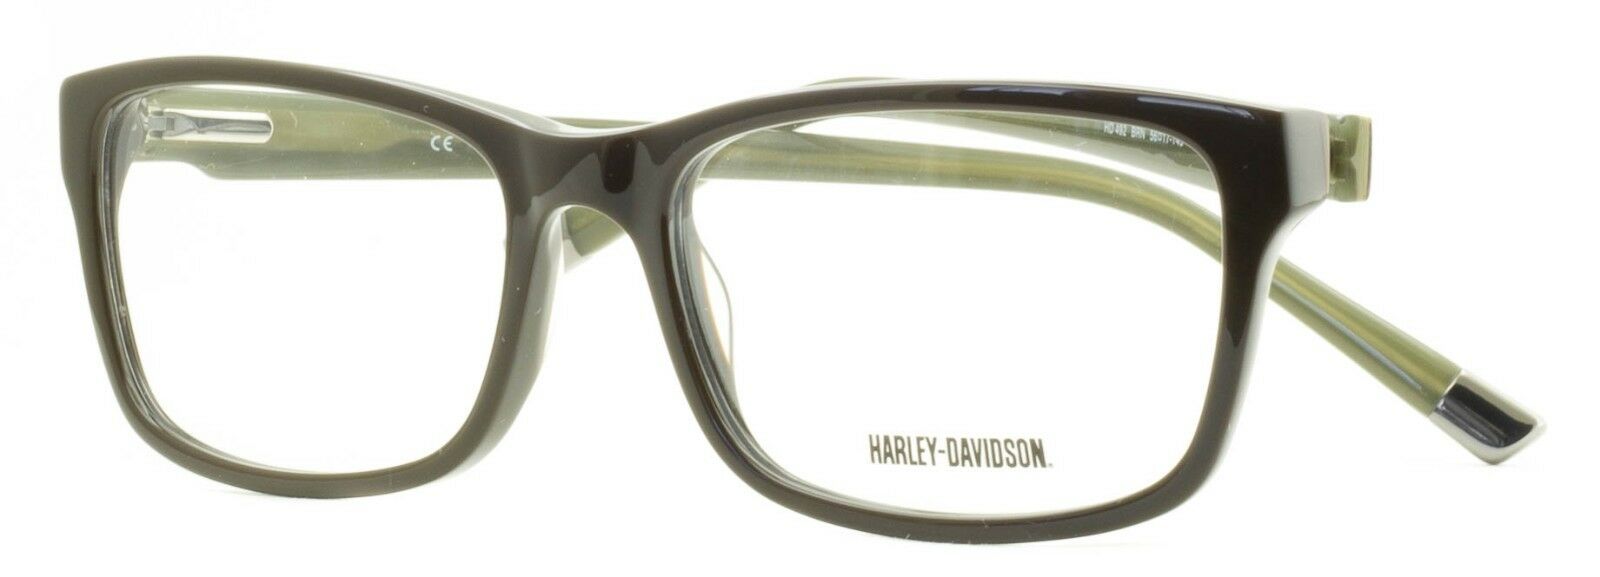 HARLEY-DAVIDSON HD 492 BRN Eyewear FRAMES RX Optical Eyeglasses Glasses New BNIB